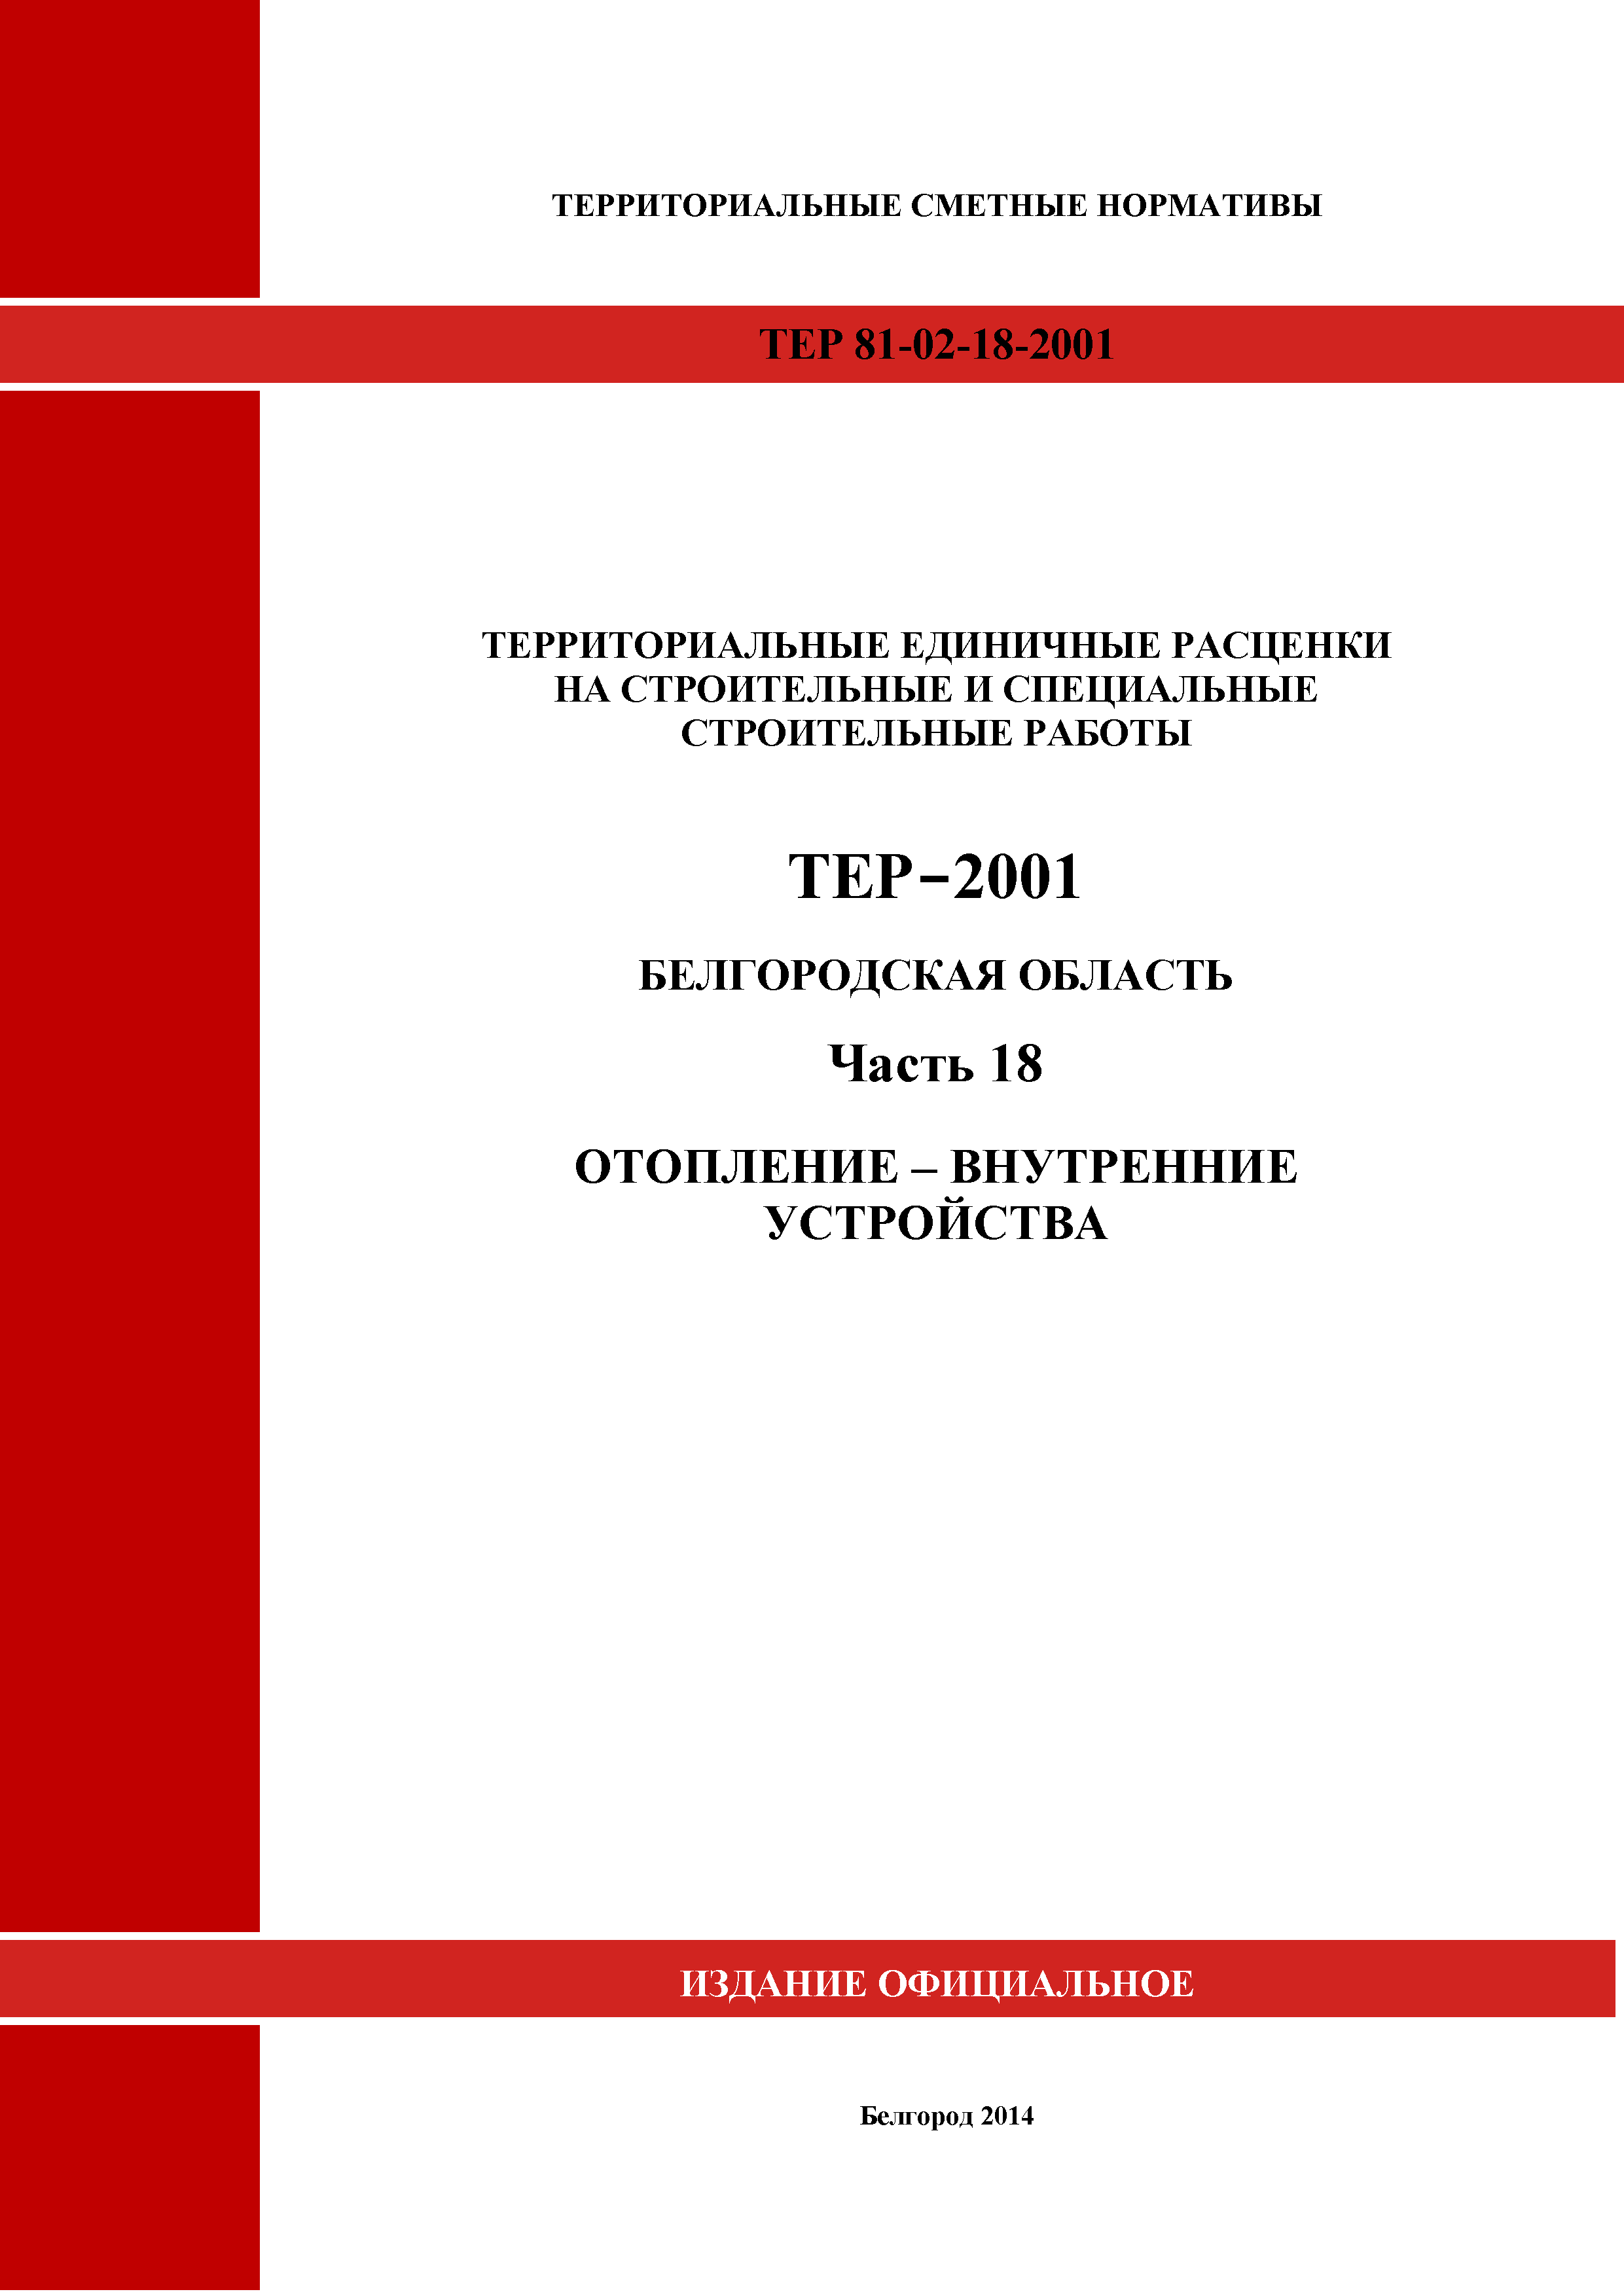 ТЕР Белгородская область 81-02-18-2001